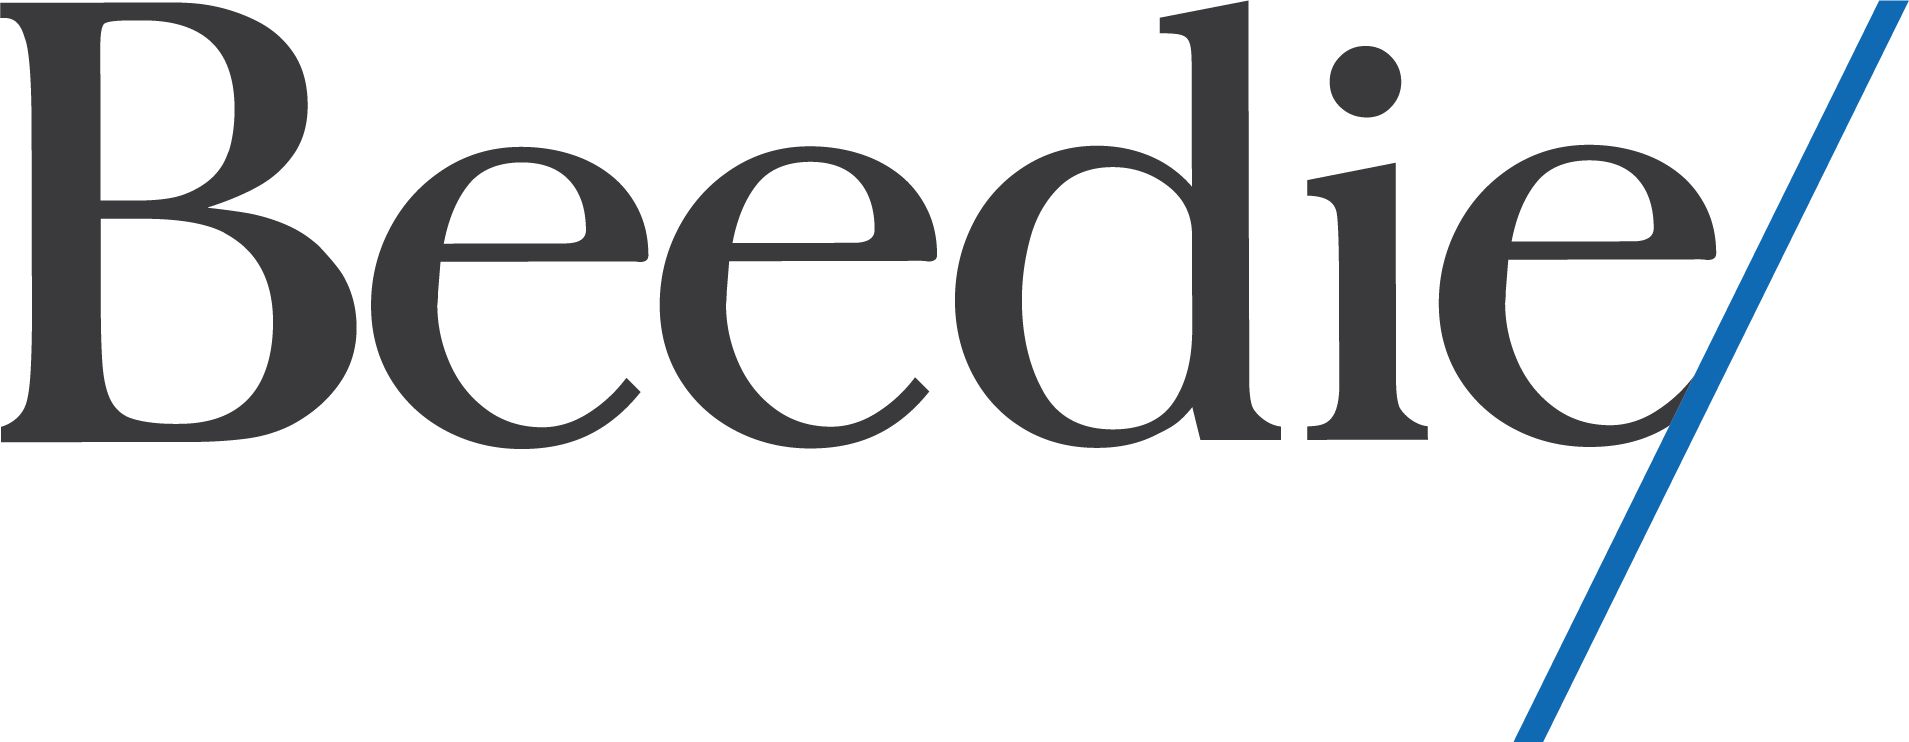 Gift of Time Beedie Sponsor Logo